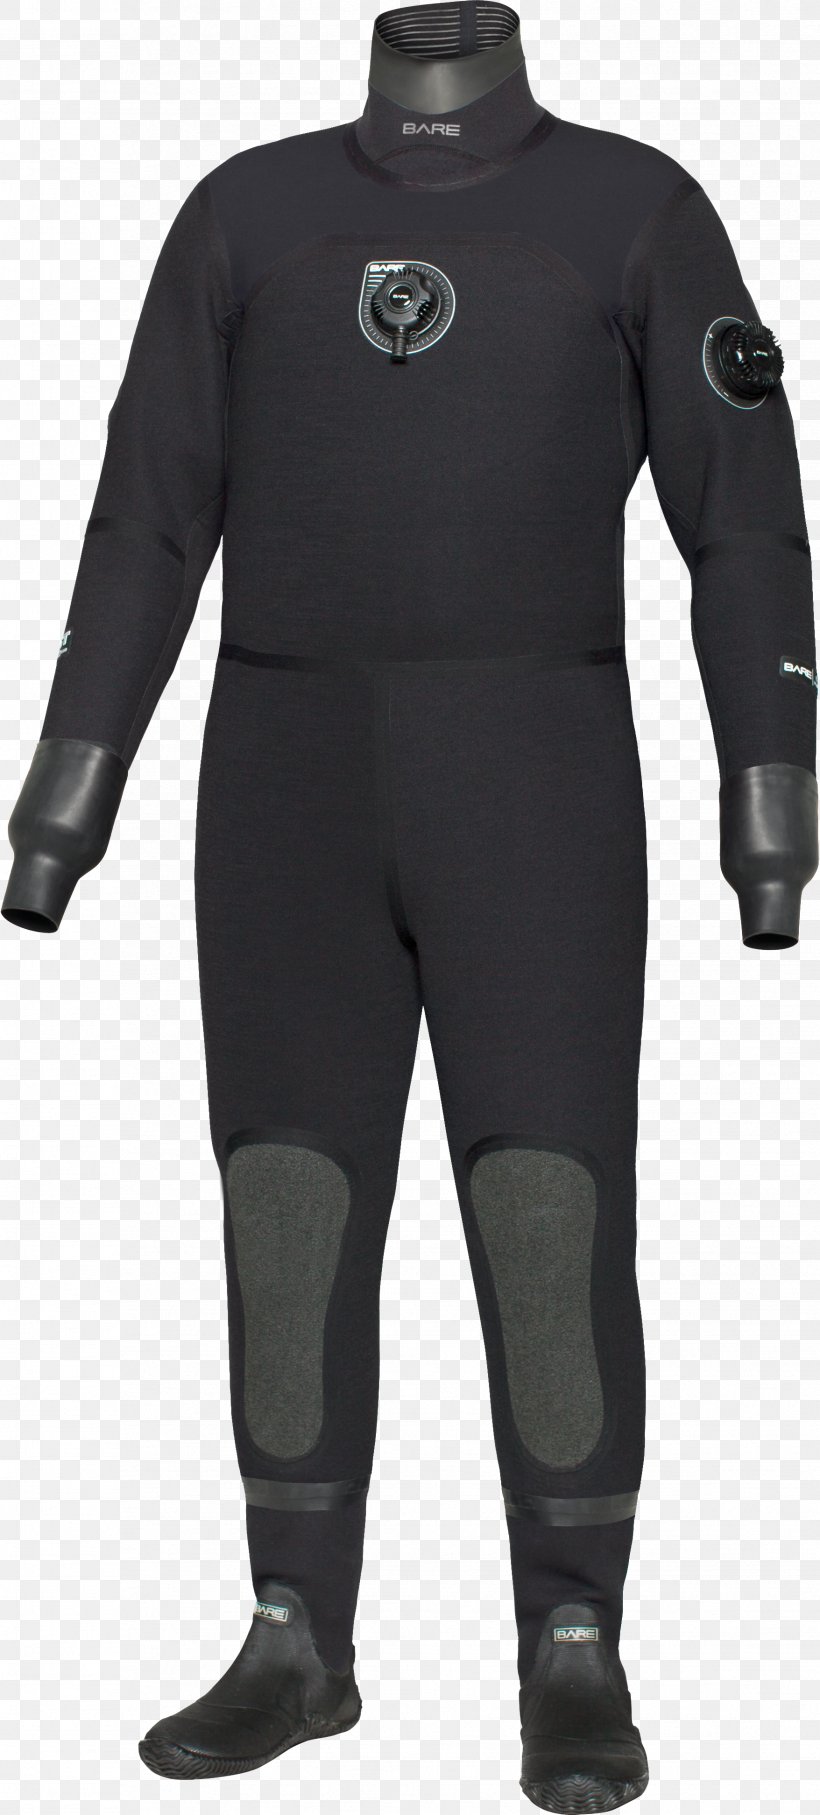 Dry Suit Neoprene Diving Suit Scuba Diving Wetsuit, PNG, 1756x3888px, Dry Suit, Braces, Costume, Diving Equipment, Diving Suit Download Free